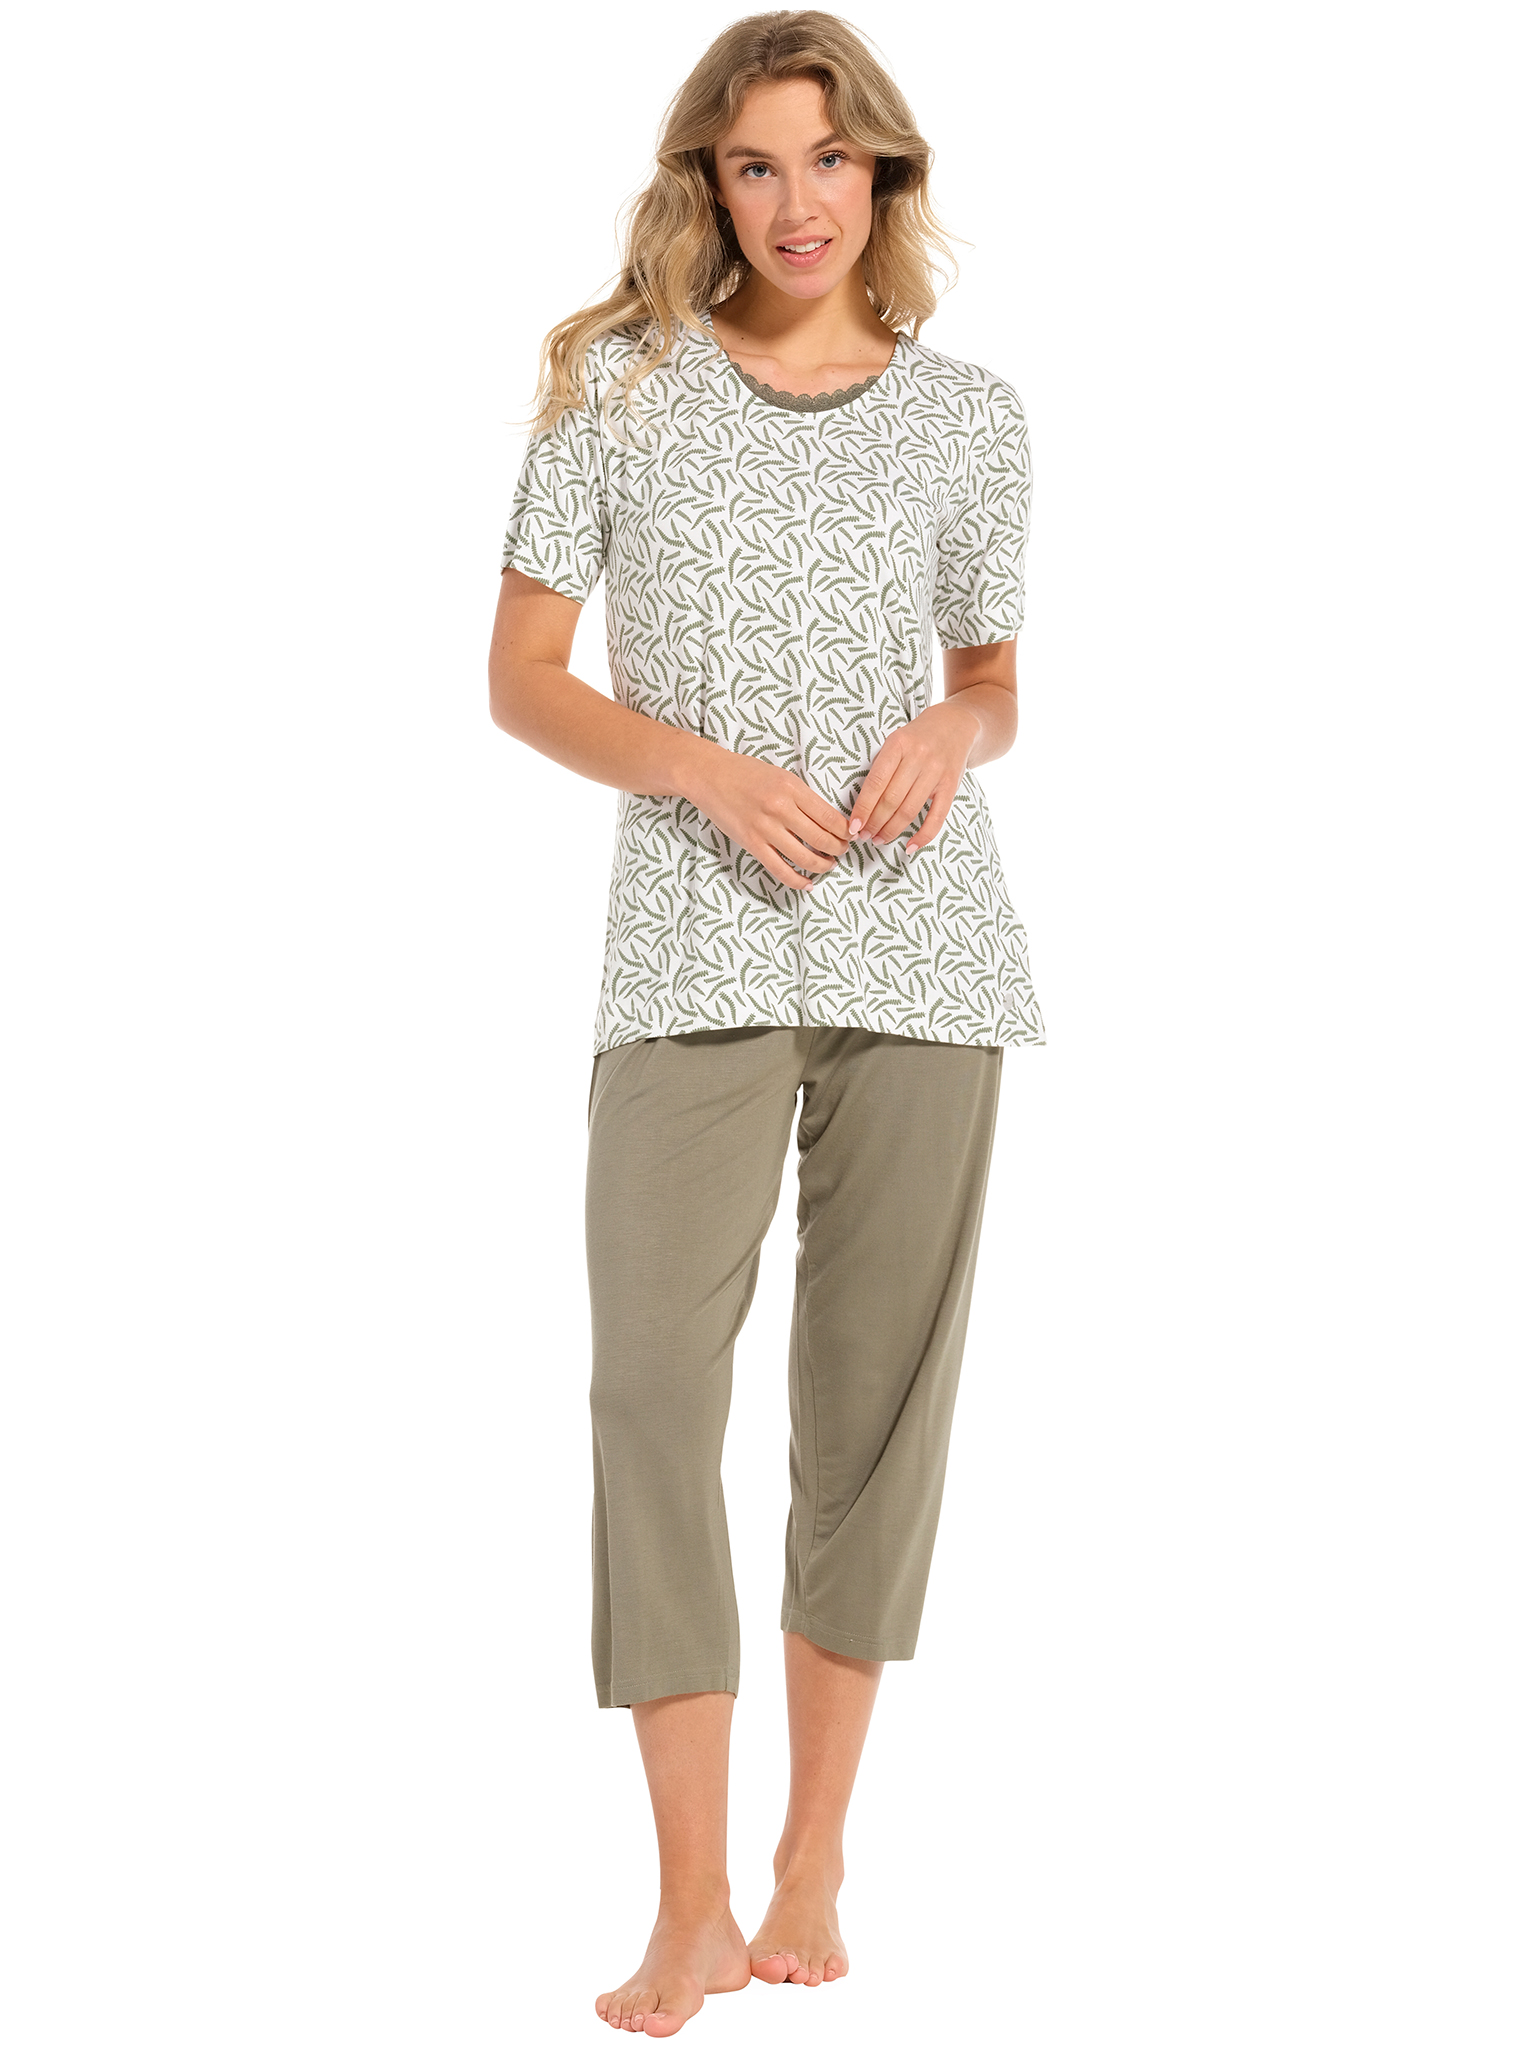 Pastunette pyjama dames - wit/donkergroen met print - 20241-148-2/720 - maat 48